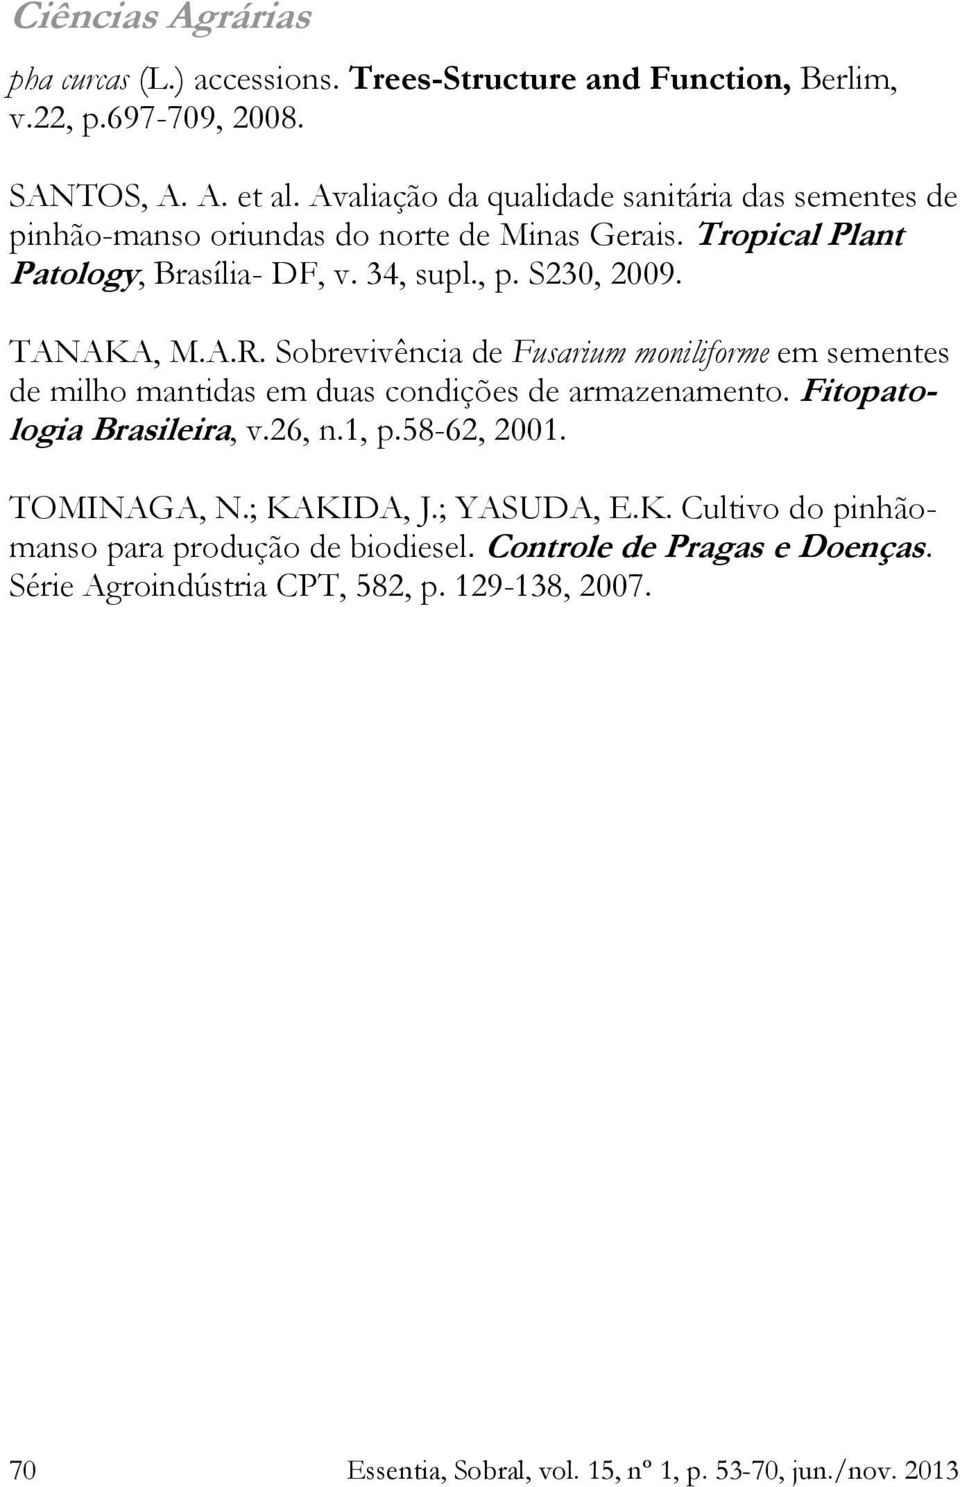 TANAKA, M.A.R. Sobrevivência de Fusarium moniliforme em sementes de milho mantidas em duas condições de armazenamento. Fitopatologia Brasileira, v.26, n.1, p.